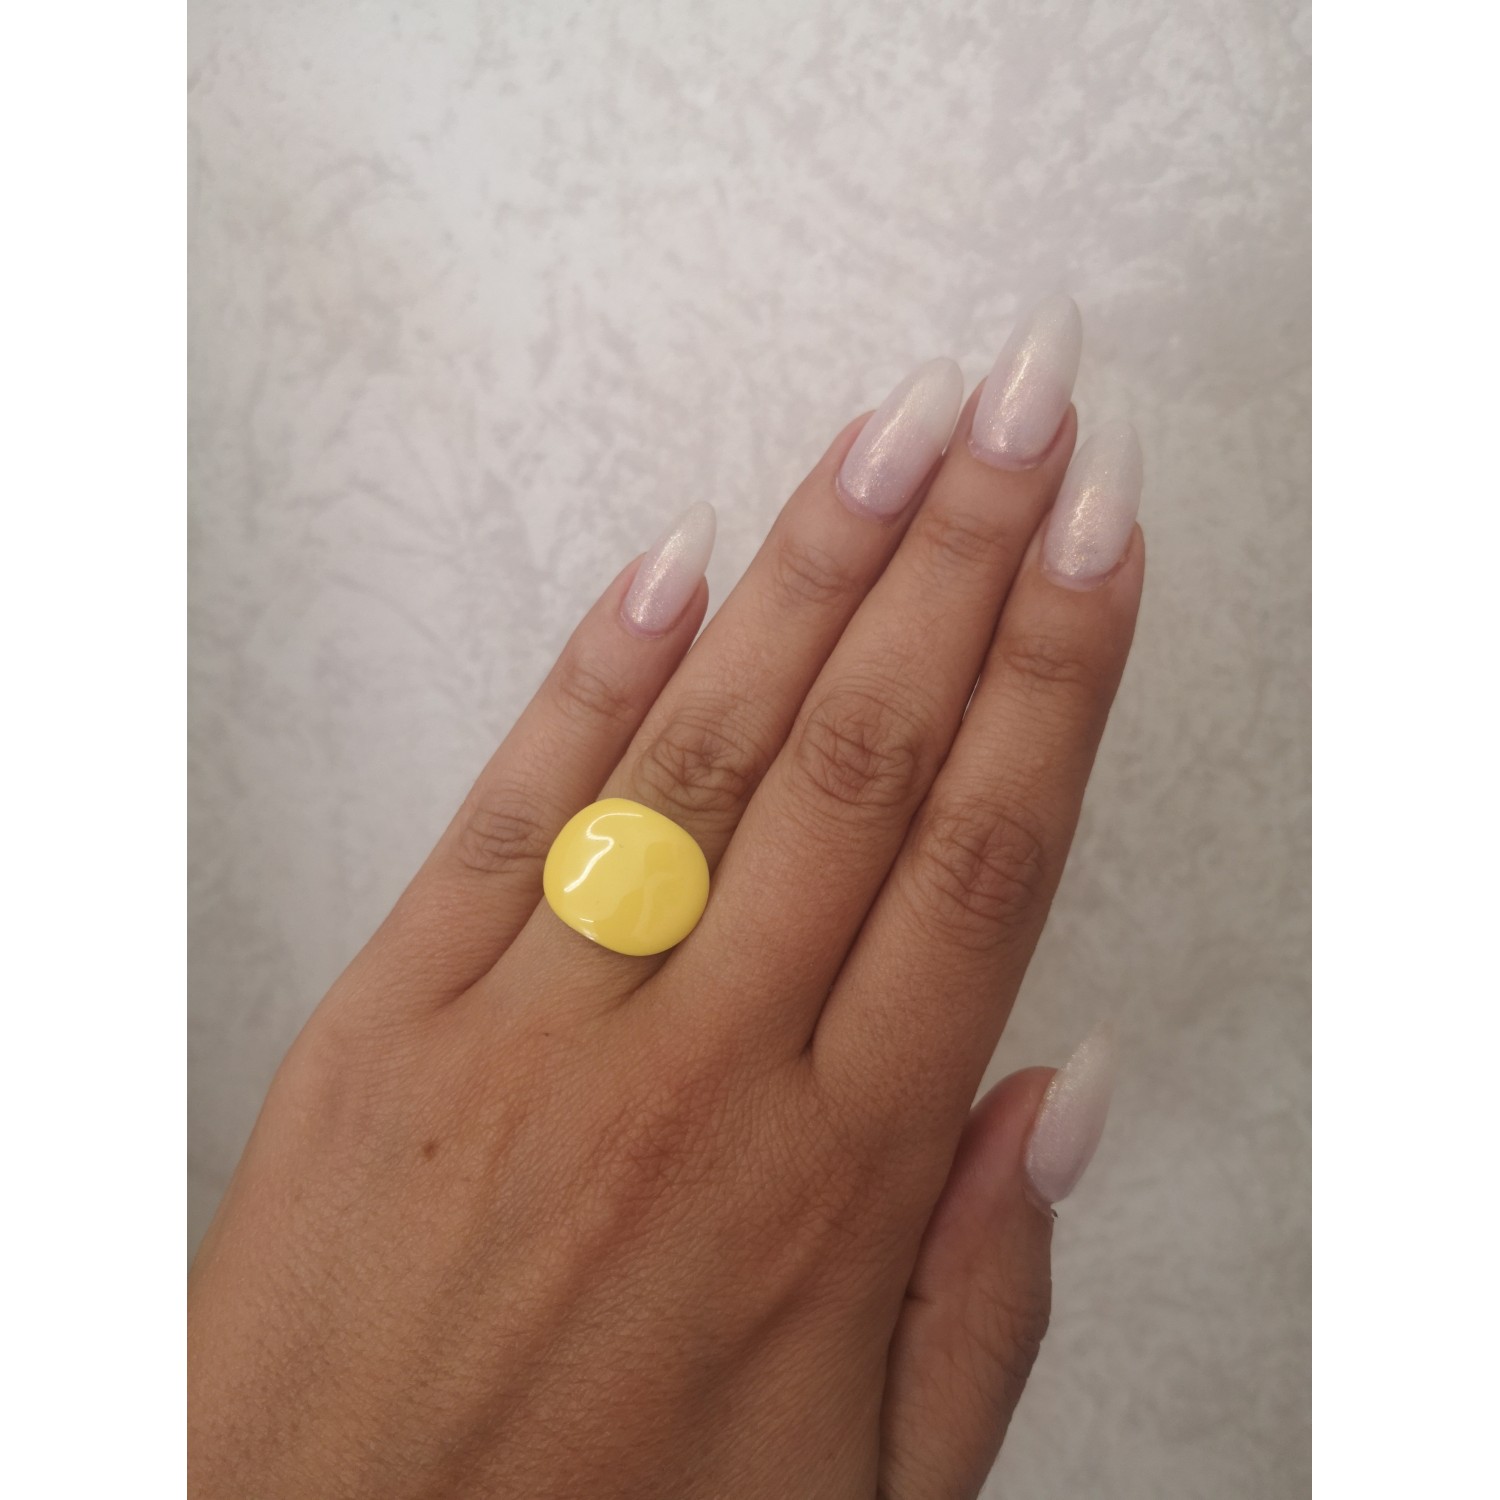 STAINLESS STEEL δαχτυλίδι ανοιγόμενο κίτρινο σμάλτο σε κίτρινο χρυσό.